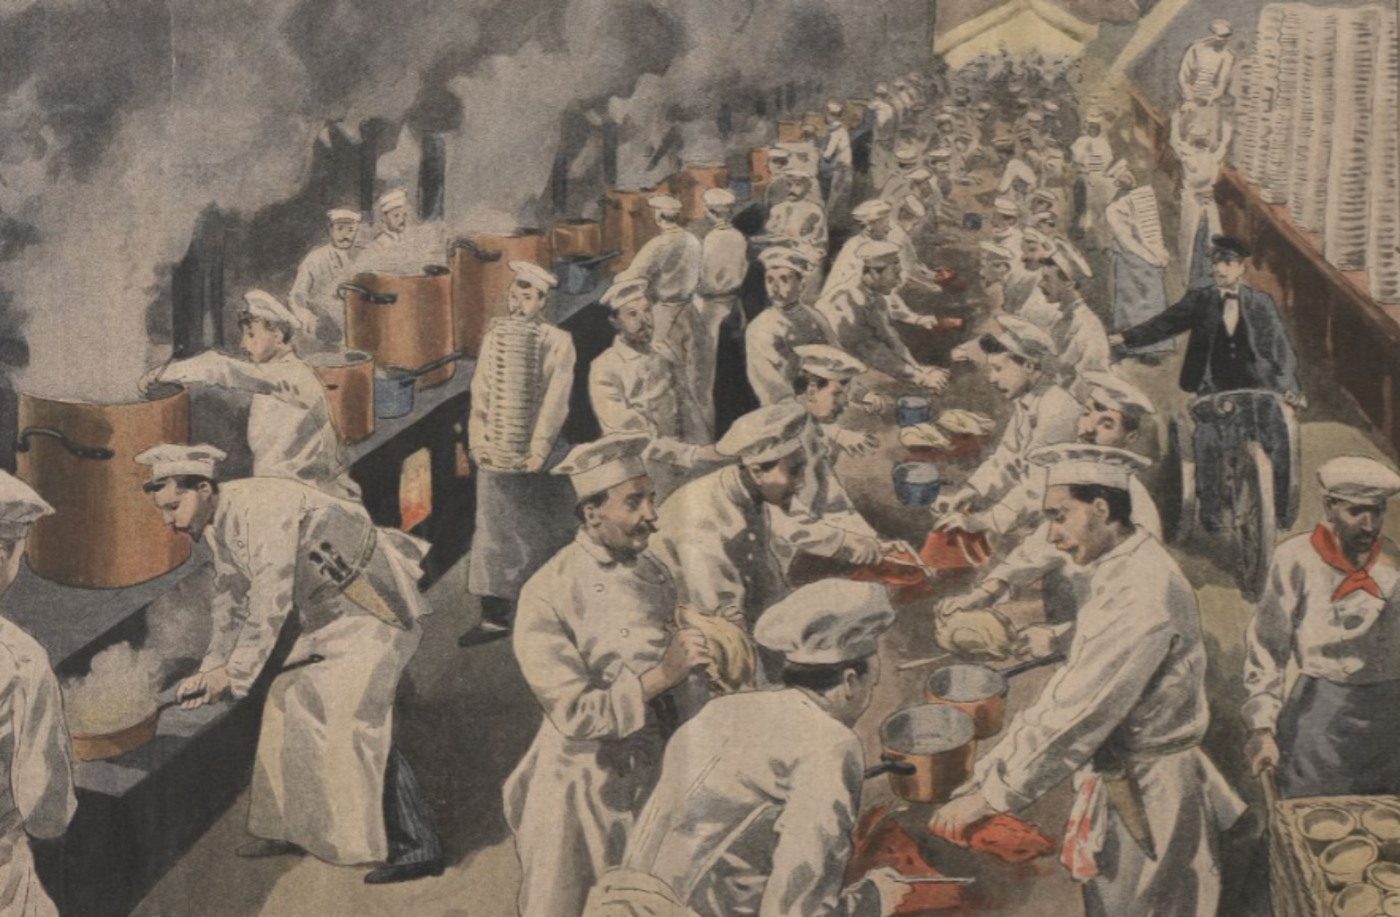 Le banquet des maires de 1900, un repas gargantuesque